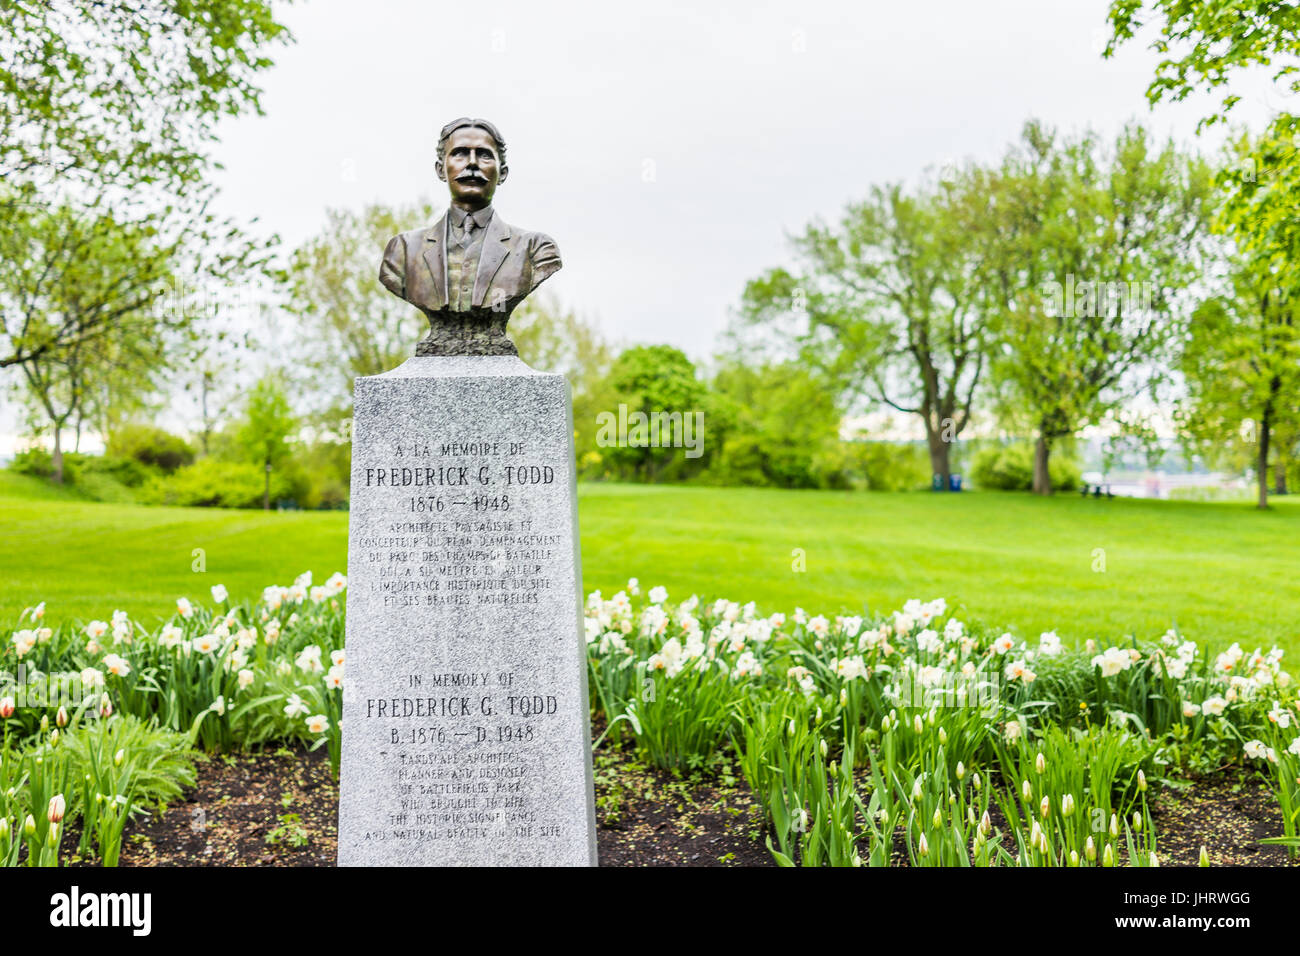 La ville de Québec, Canada - 30 mai 2017 : monument mémorial de Frederick G. Todd avec buste en plaines d'Abraham Banque D'Images